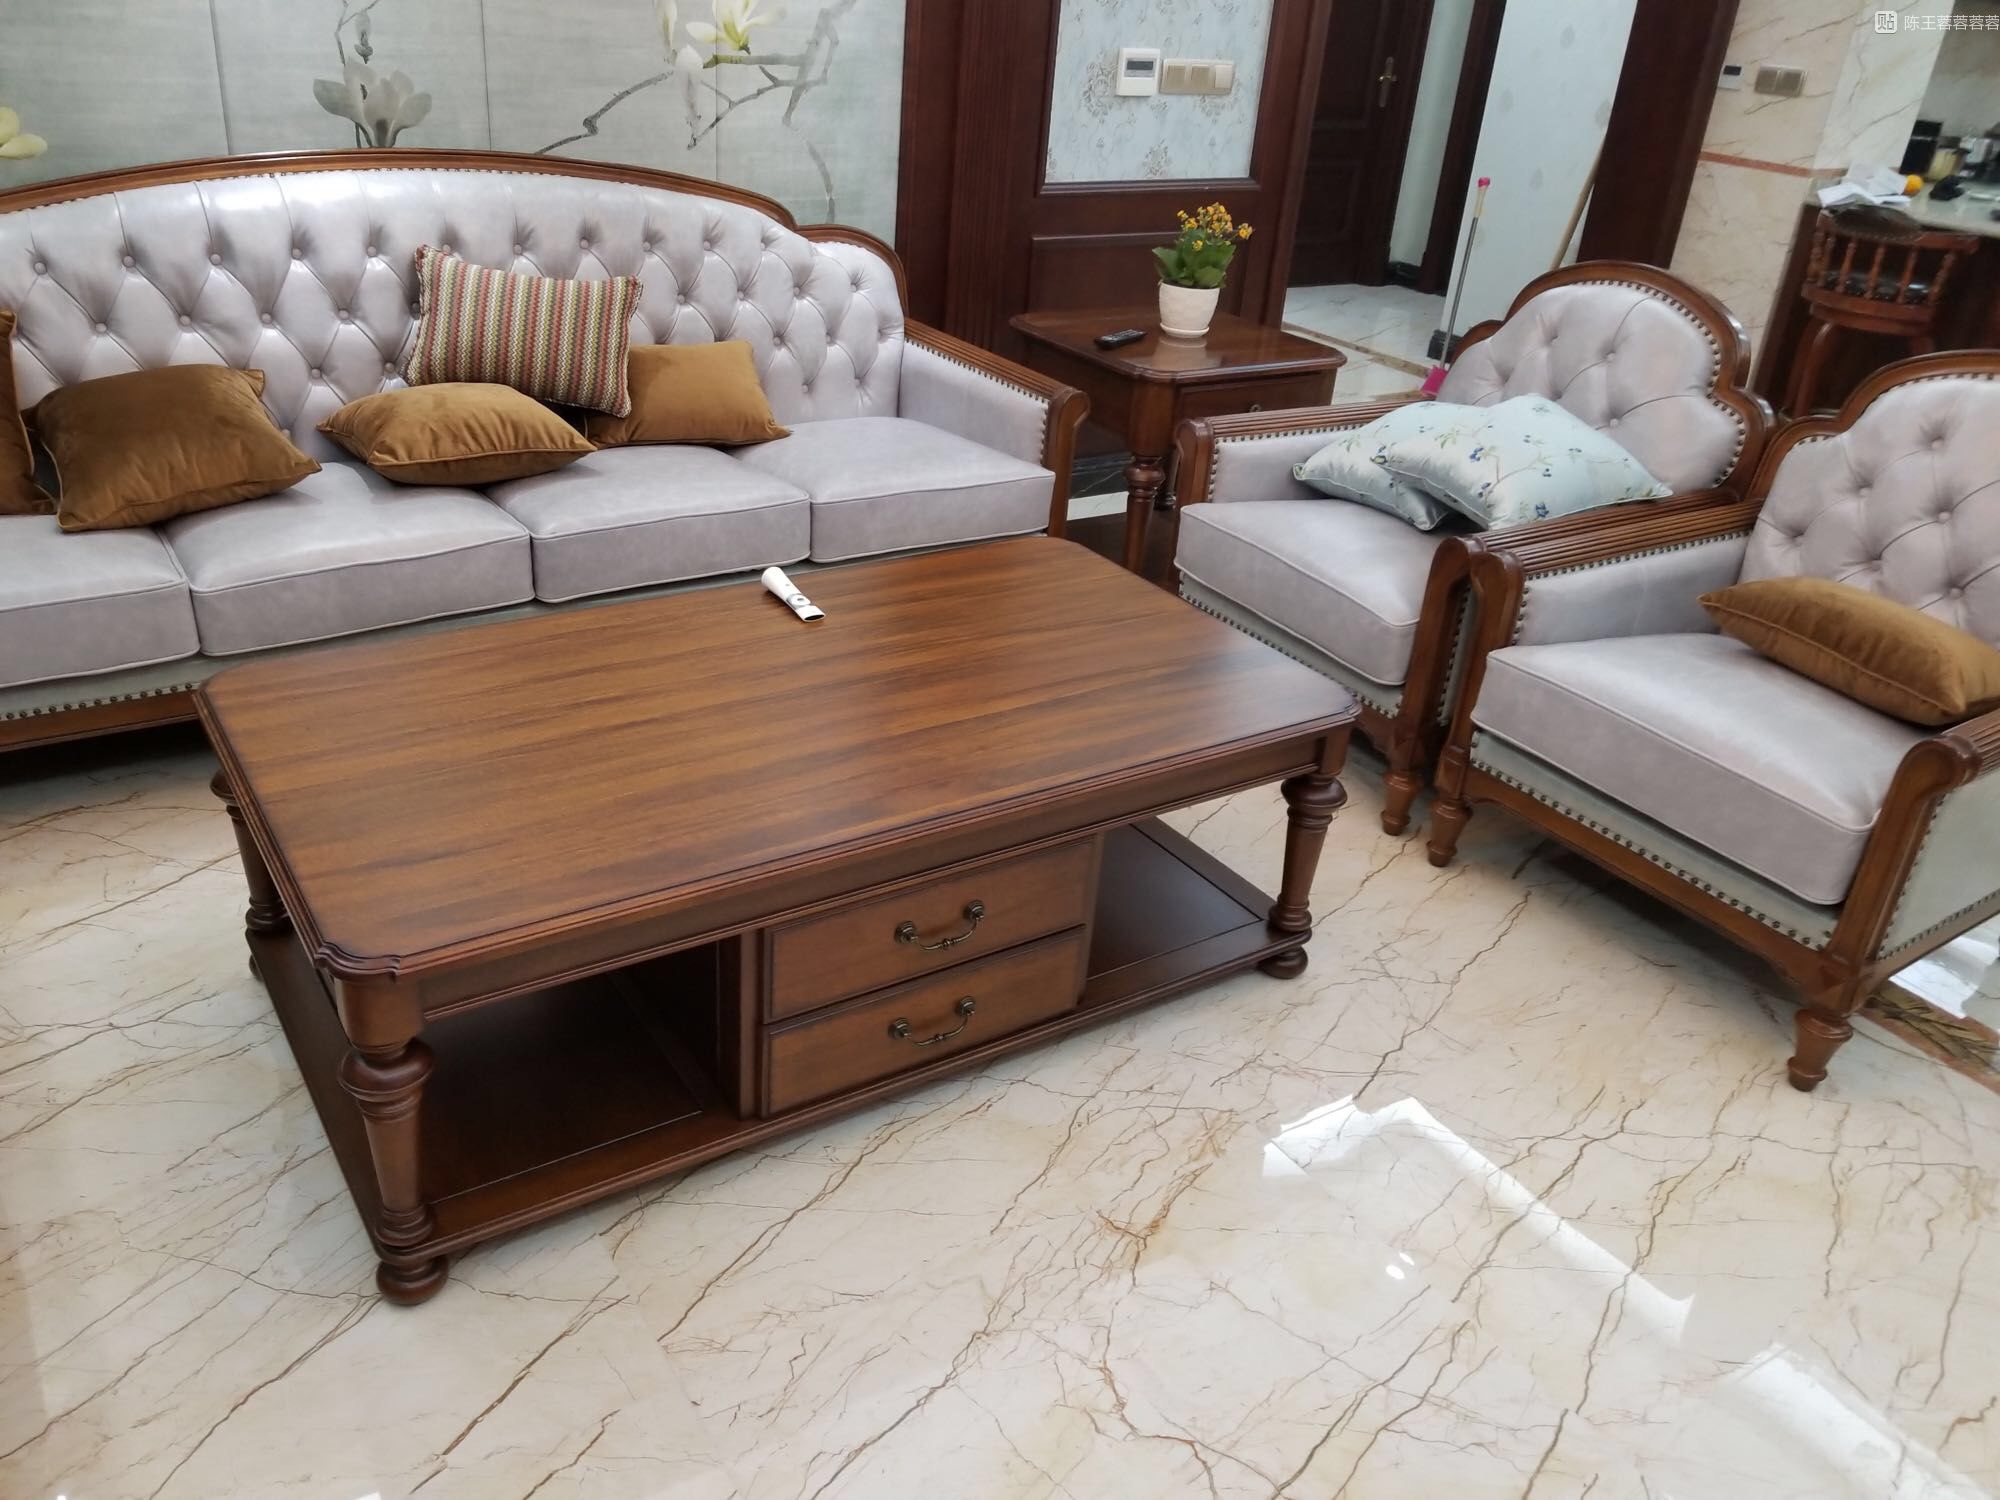 美式的客厅沙发非常喜欢,布艺坐垫坐着很舒服,搭配实木很耐用!